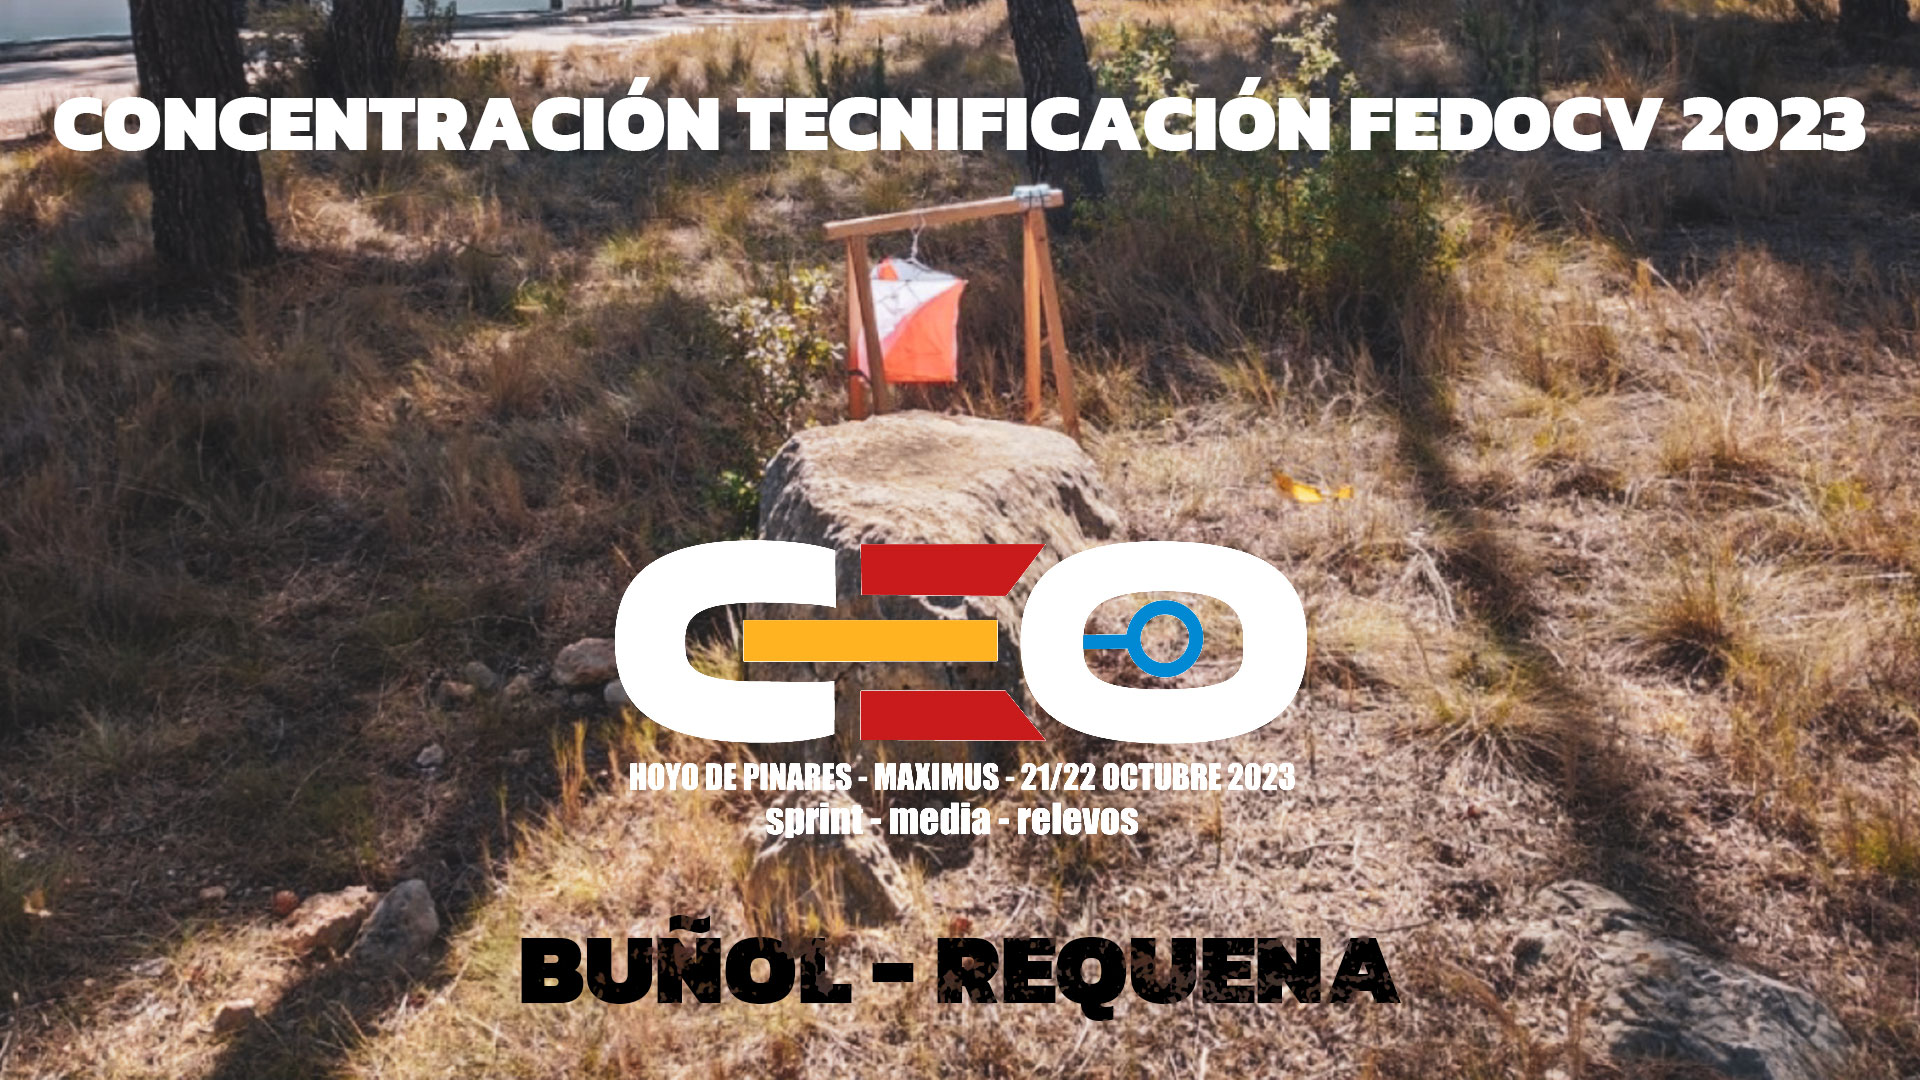 Concentración de Tecnificación FEDOCV 2023 en Buñol-Requena 